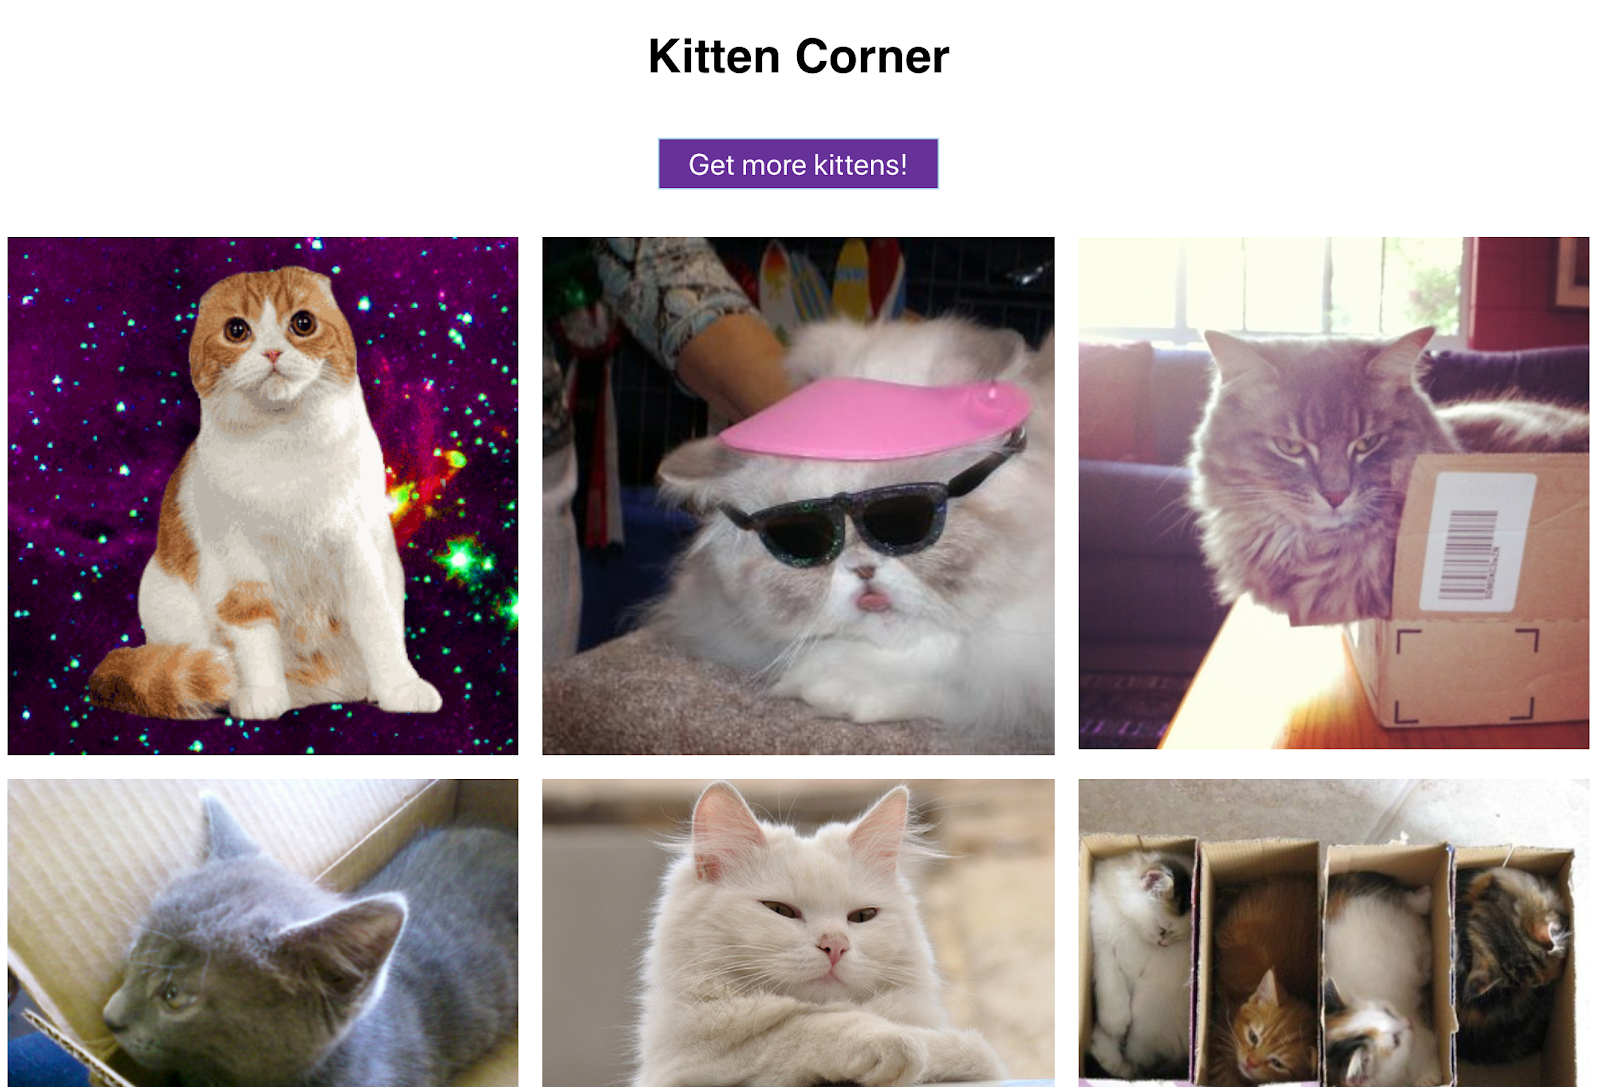 格狀顯示的可愛貓咪圖片加上可顯示更多內容的按鈕，這個網路應用程式足以讓所有貓奴心滿意足！